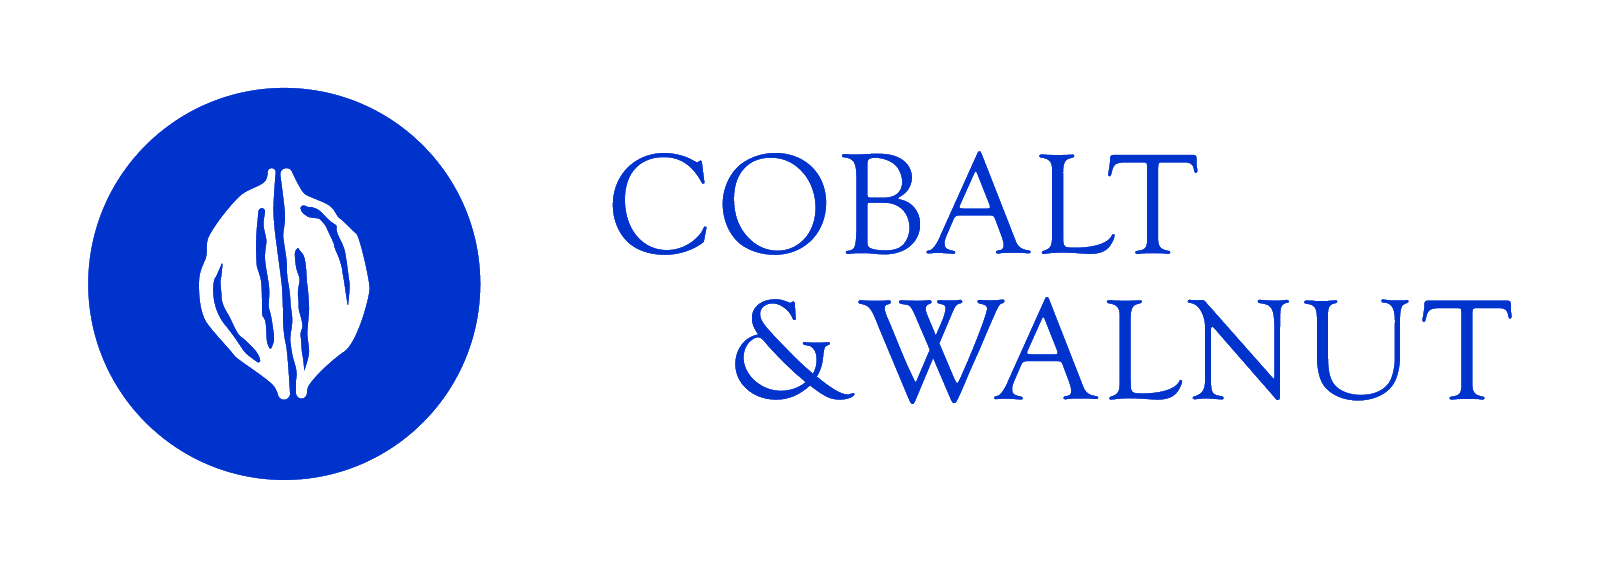 Cobalt and Walnut